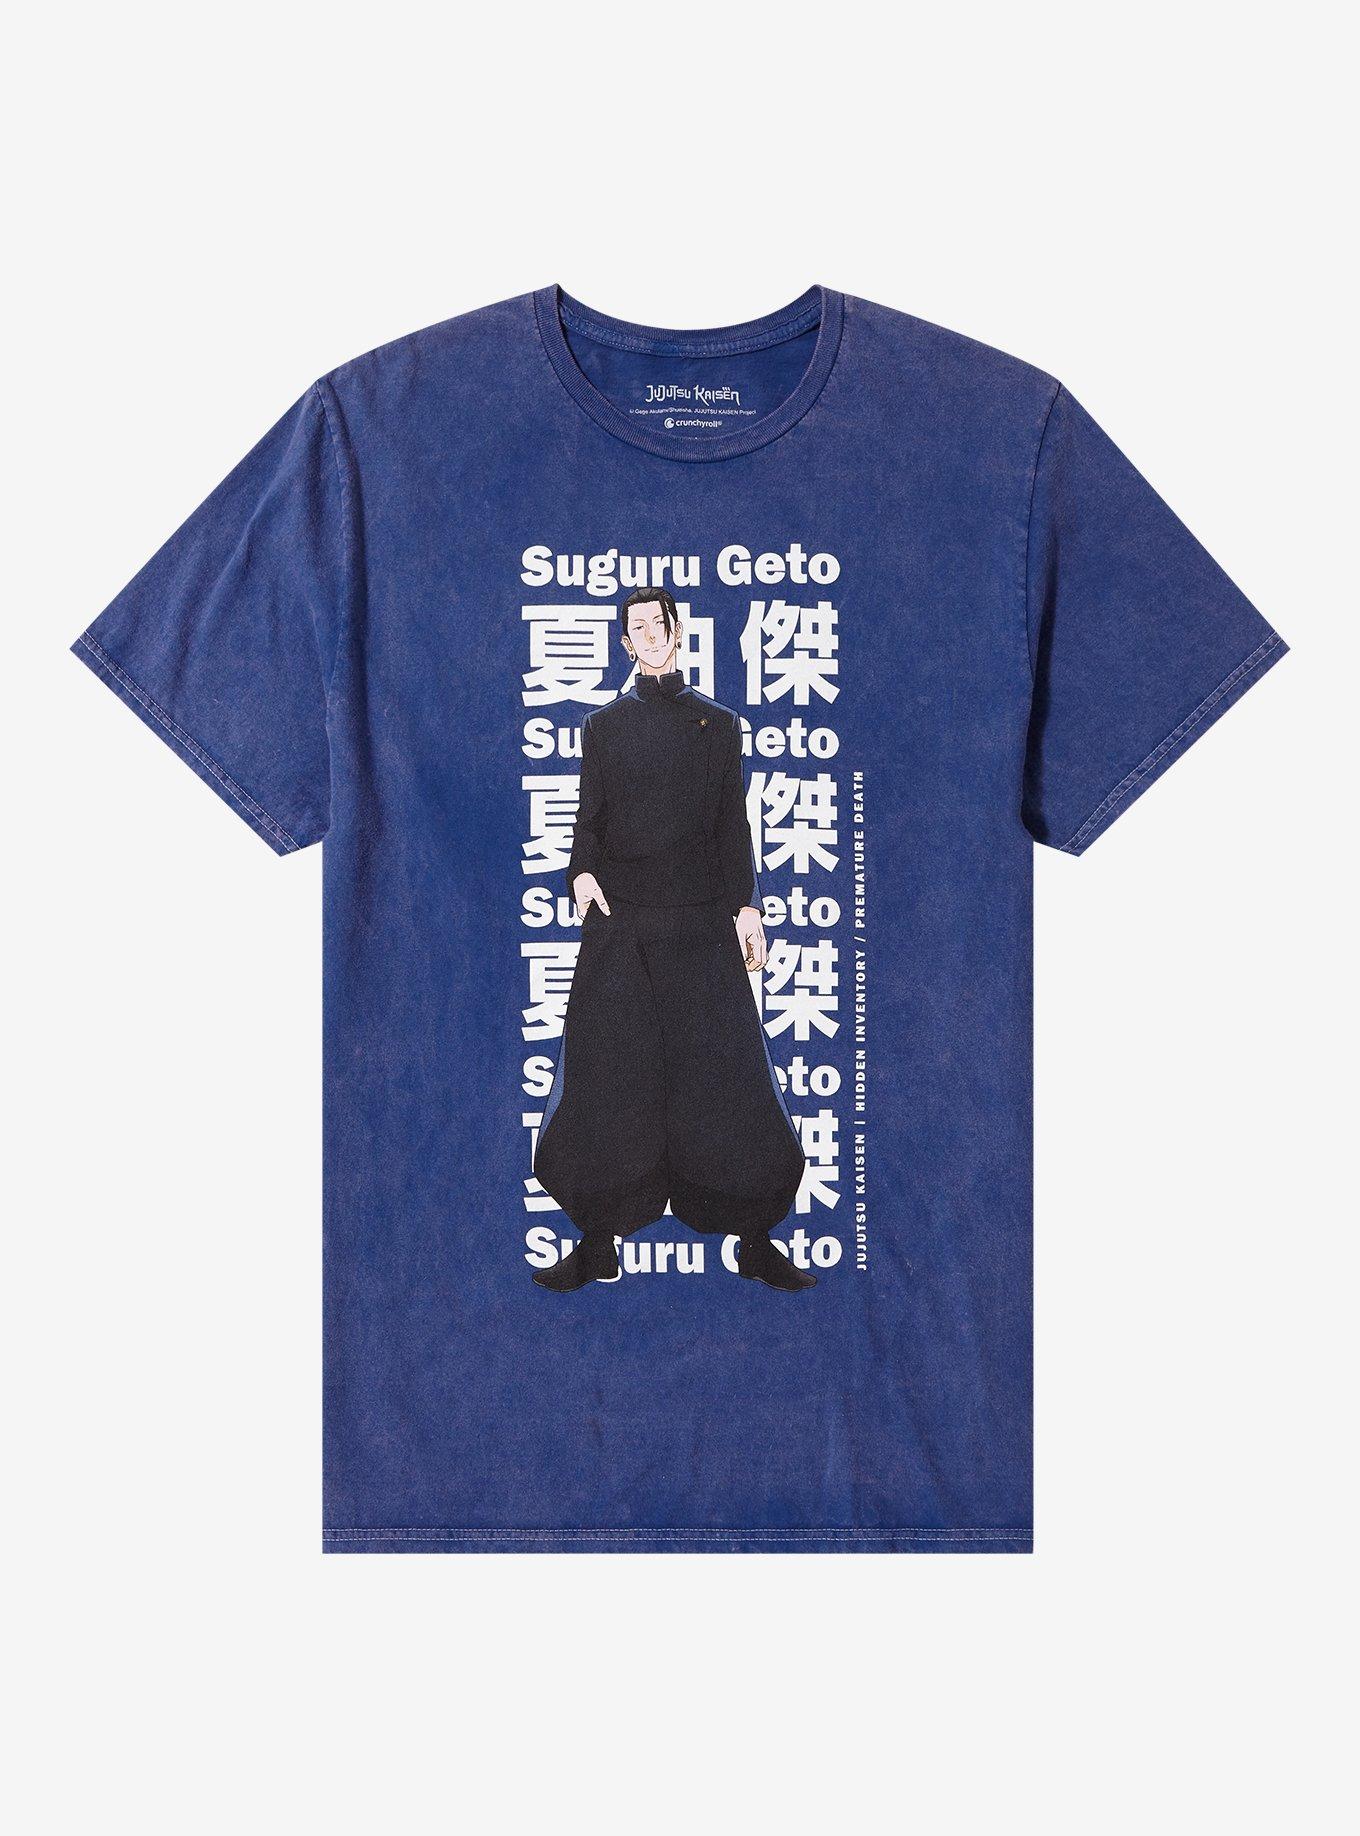 Jujutsu Kaisen Geto Season 2 Tie-Dye T-Shirt